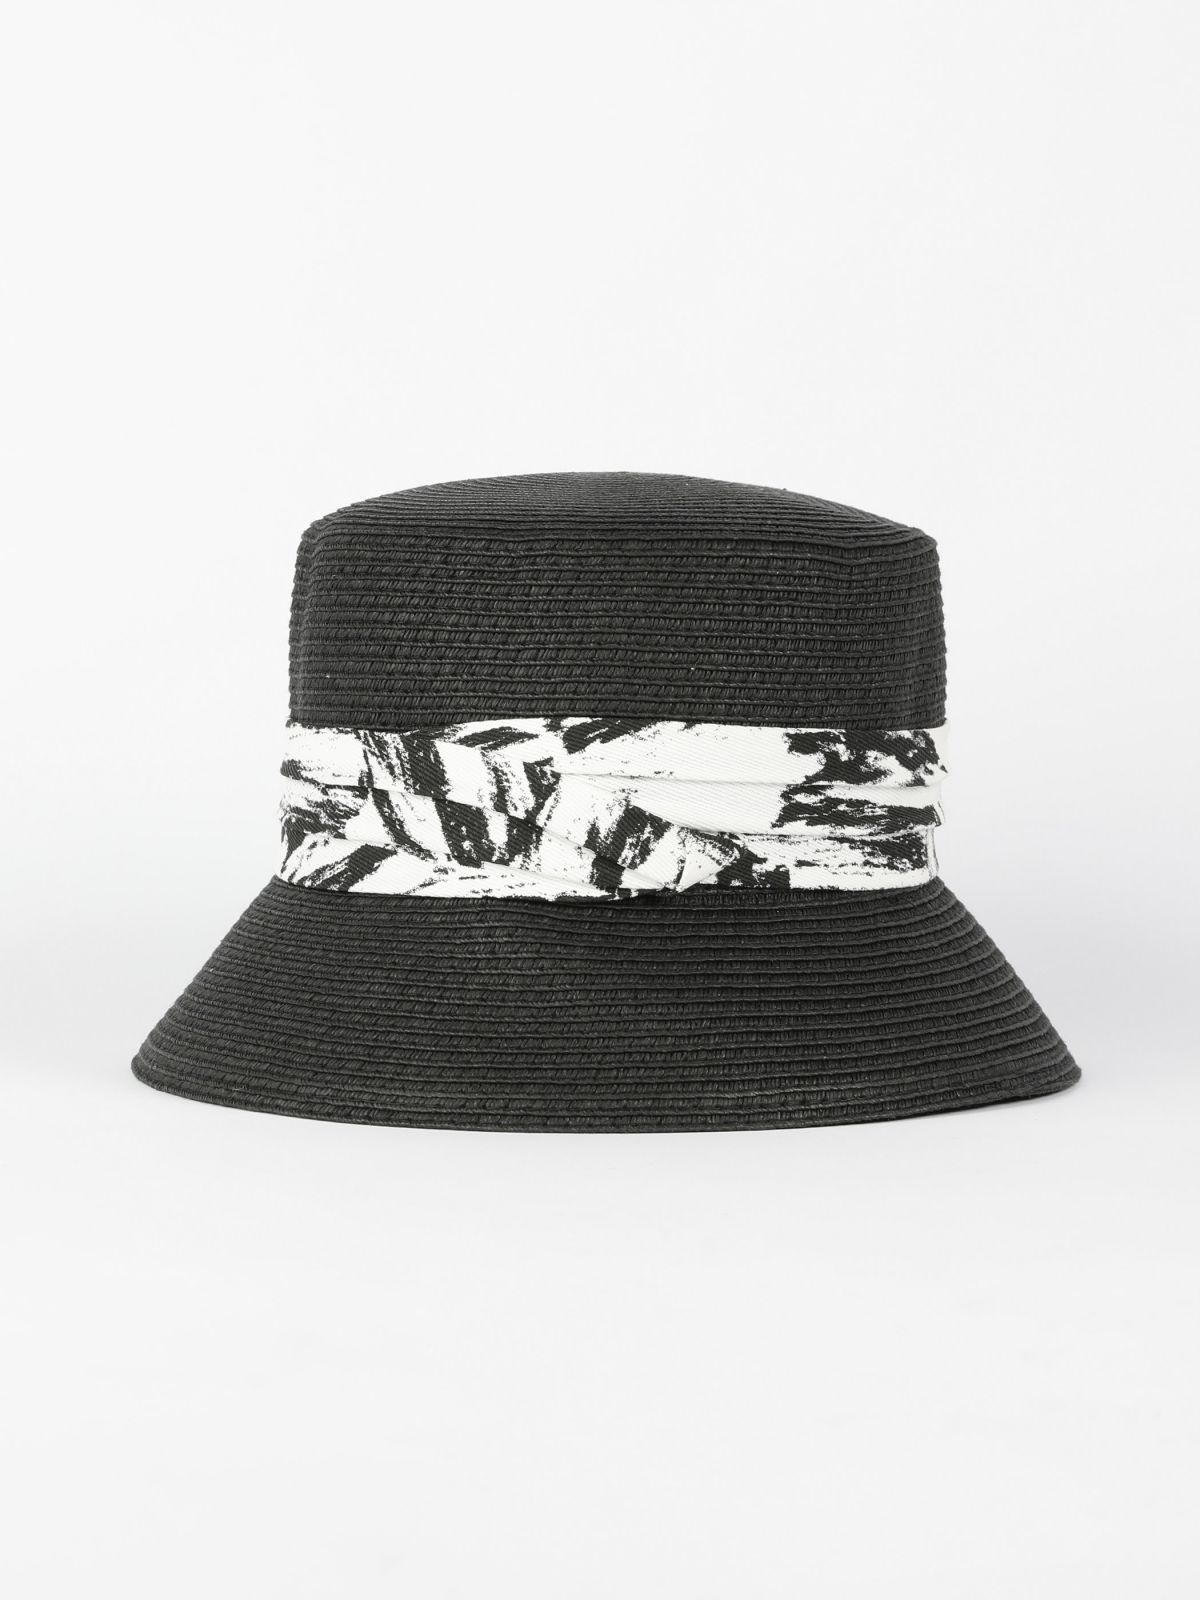  כובע באקט קש / נשים של YANGA